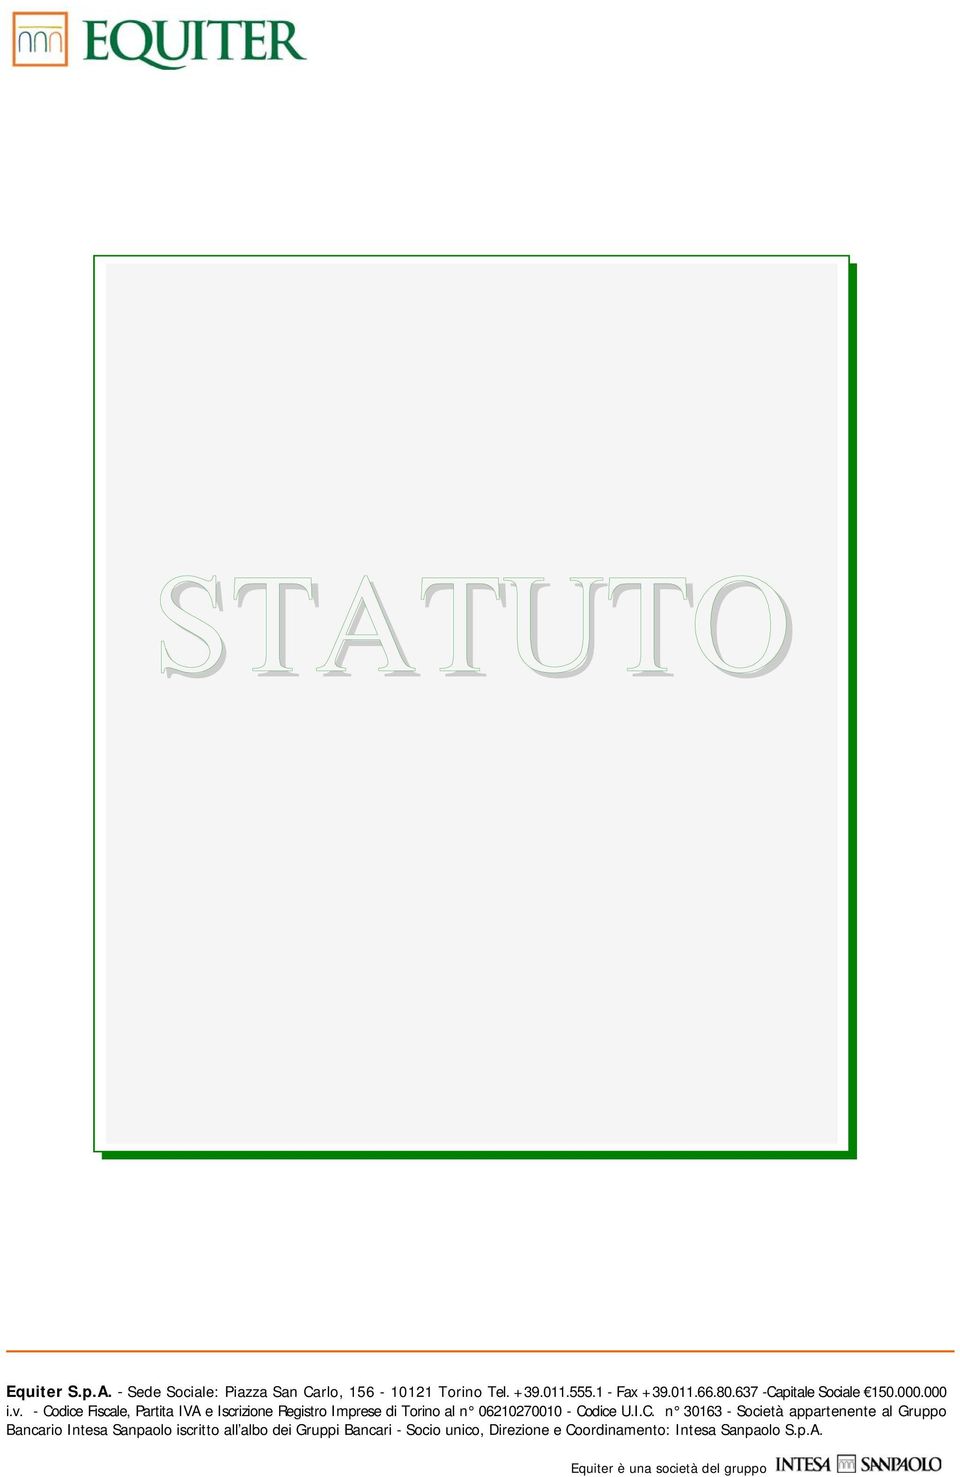 - Codice Fiscale, Partita IVA e Iscrizione Registro Imprese di Torino al n 06210270010 - Codice U.I.C. n 30163 -